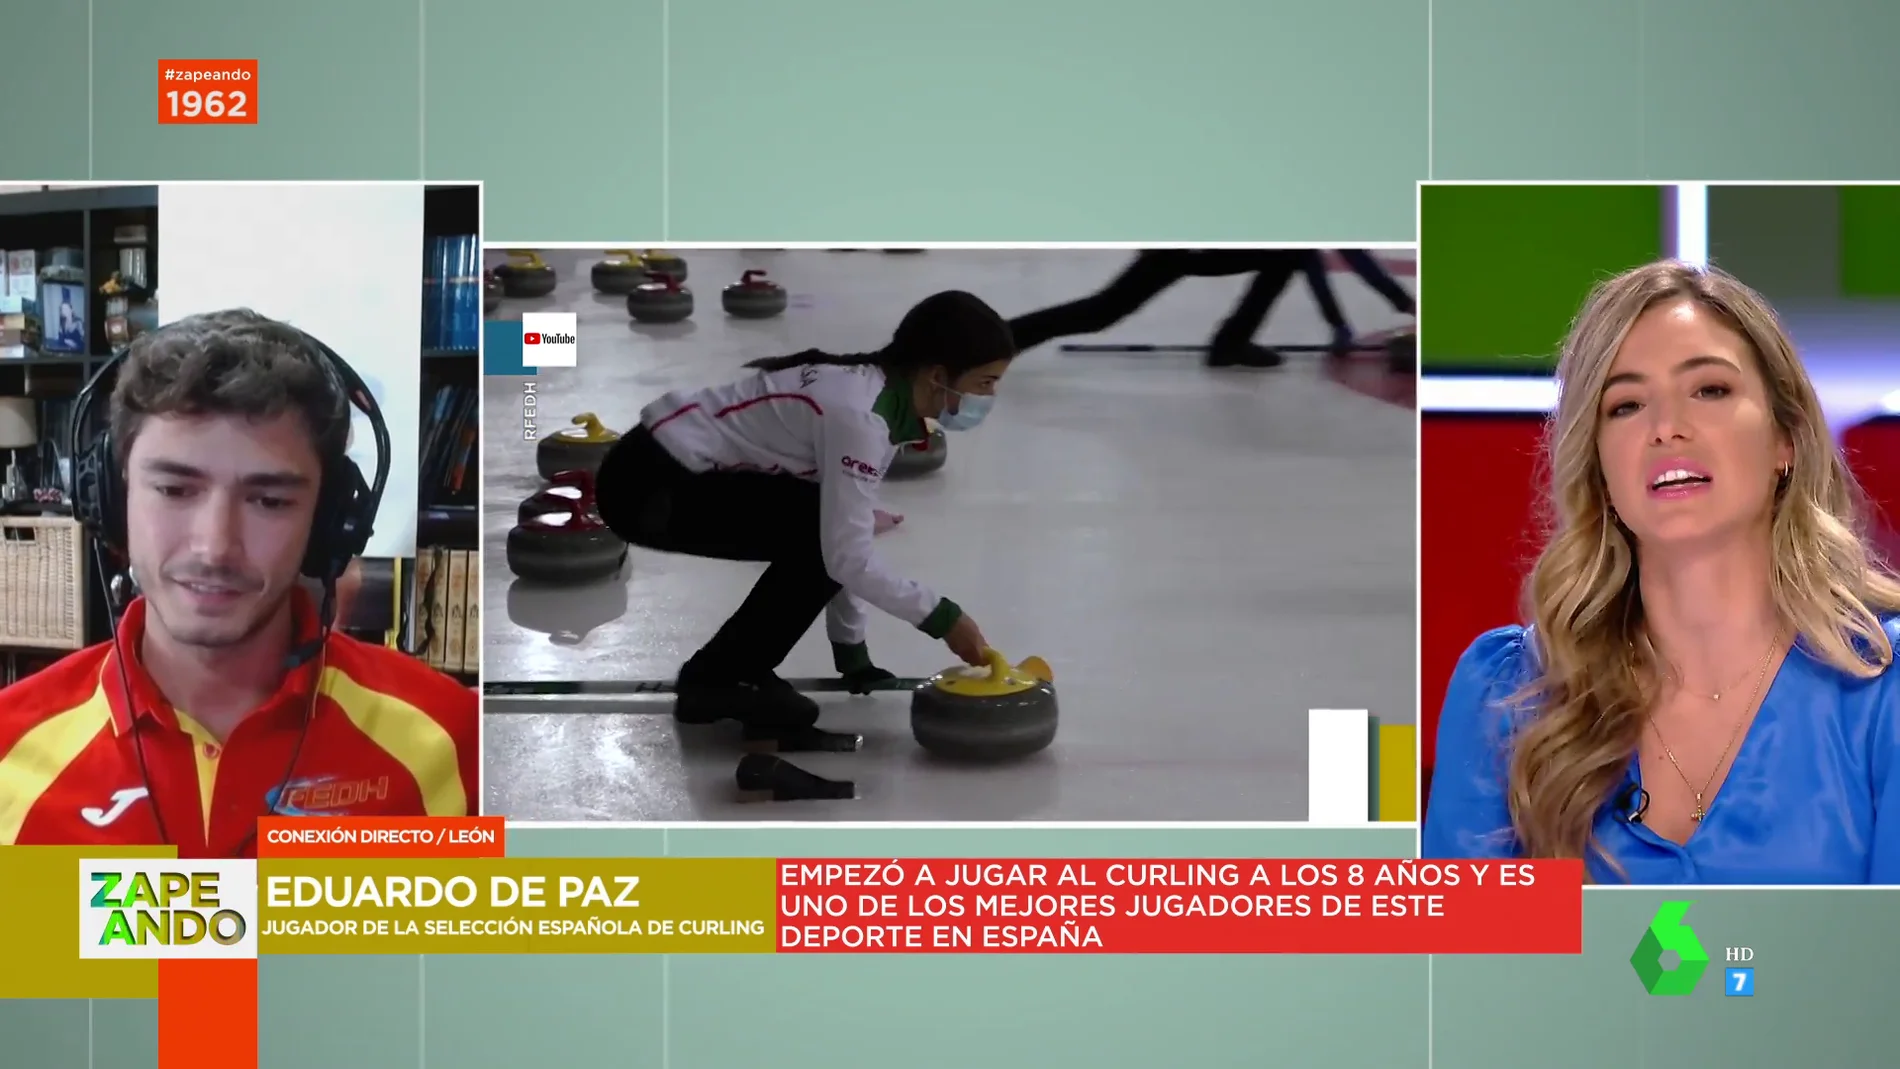 ¿Qué es el curling? El jugador de la Selección Española Eduardo de Paz desvela las claves de este curioso deporte